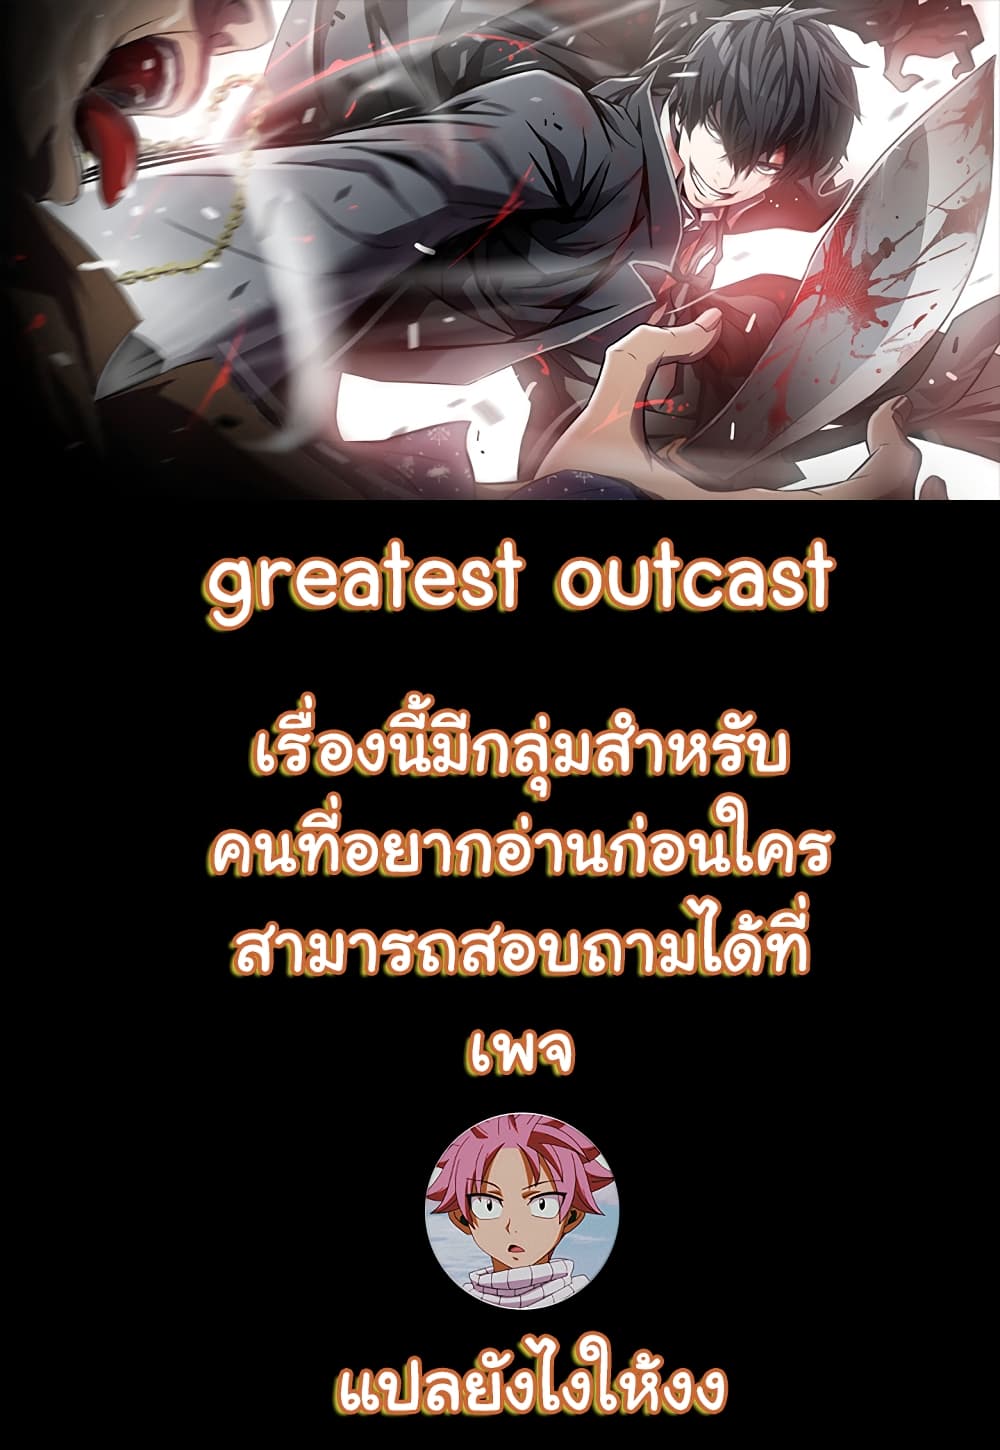 Greatest Outcast 3 01